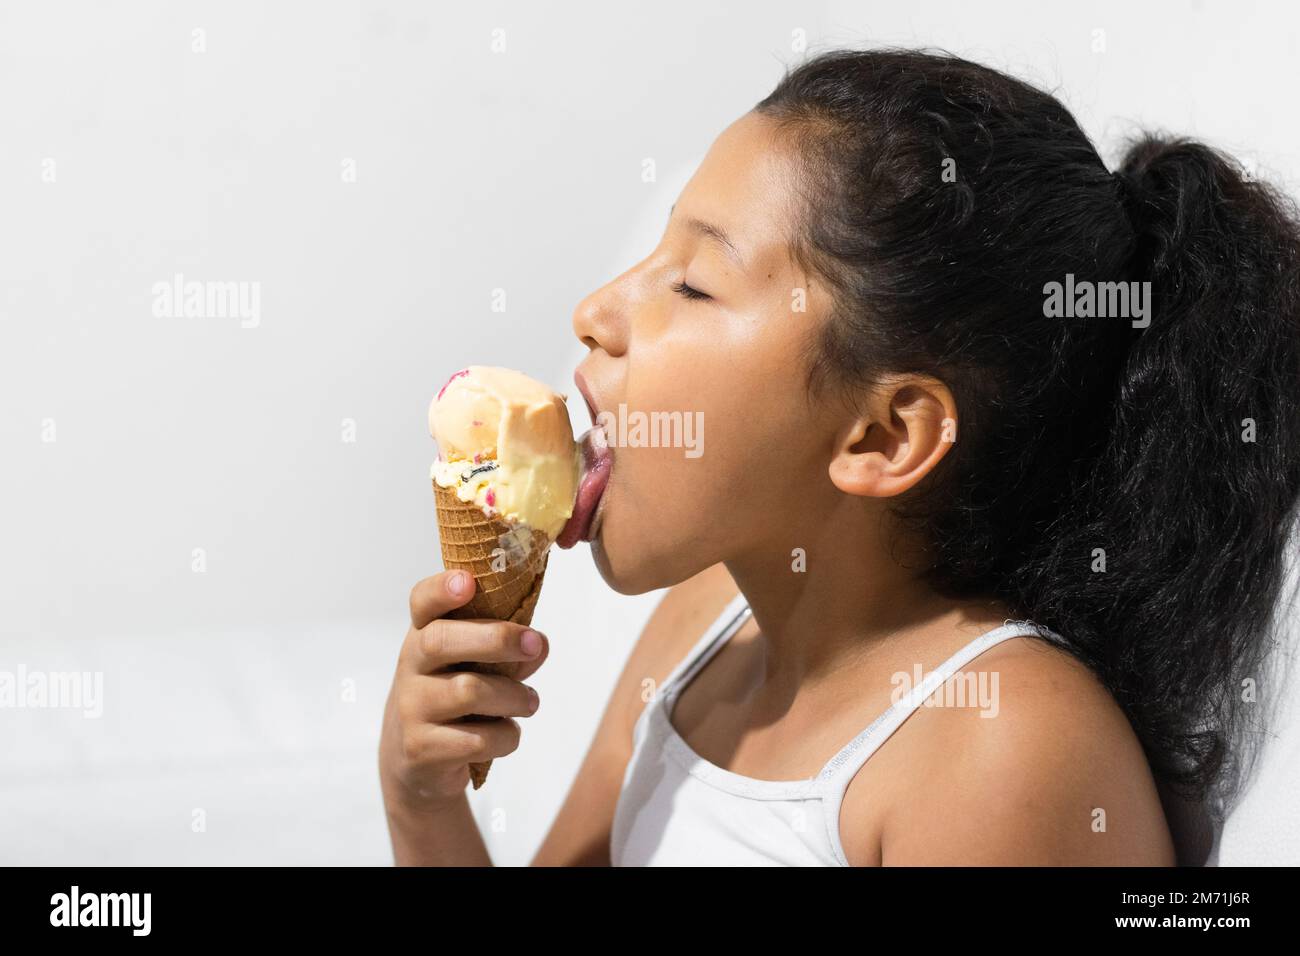 Nahaufnahme eines kleinen lateinischen Mädchens, das ihr Eis leckt, während sie die Augen schließt, und ihr Eis genießt. Mit weißem Hintergrund Stockfoto